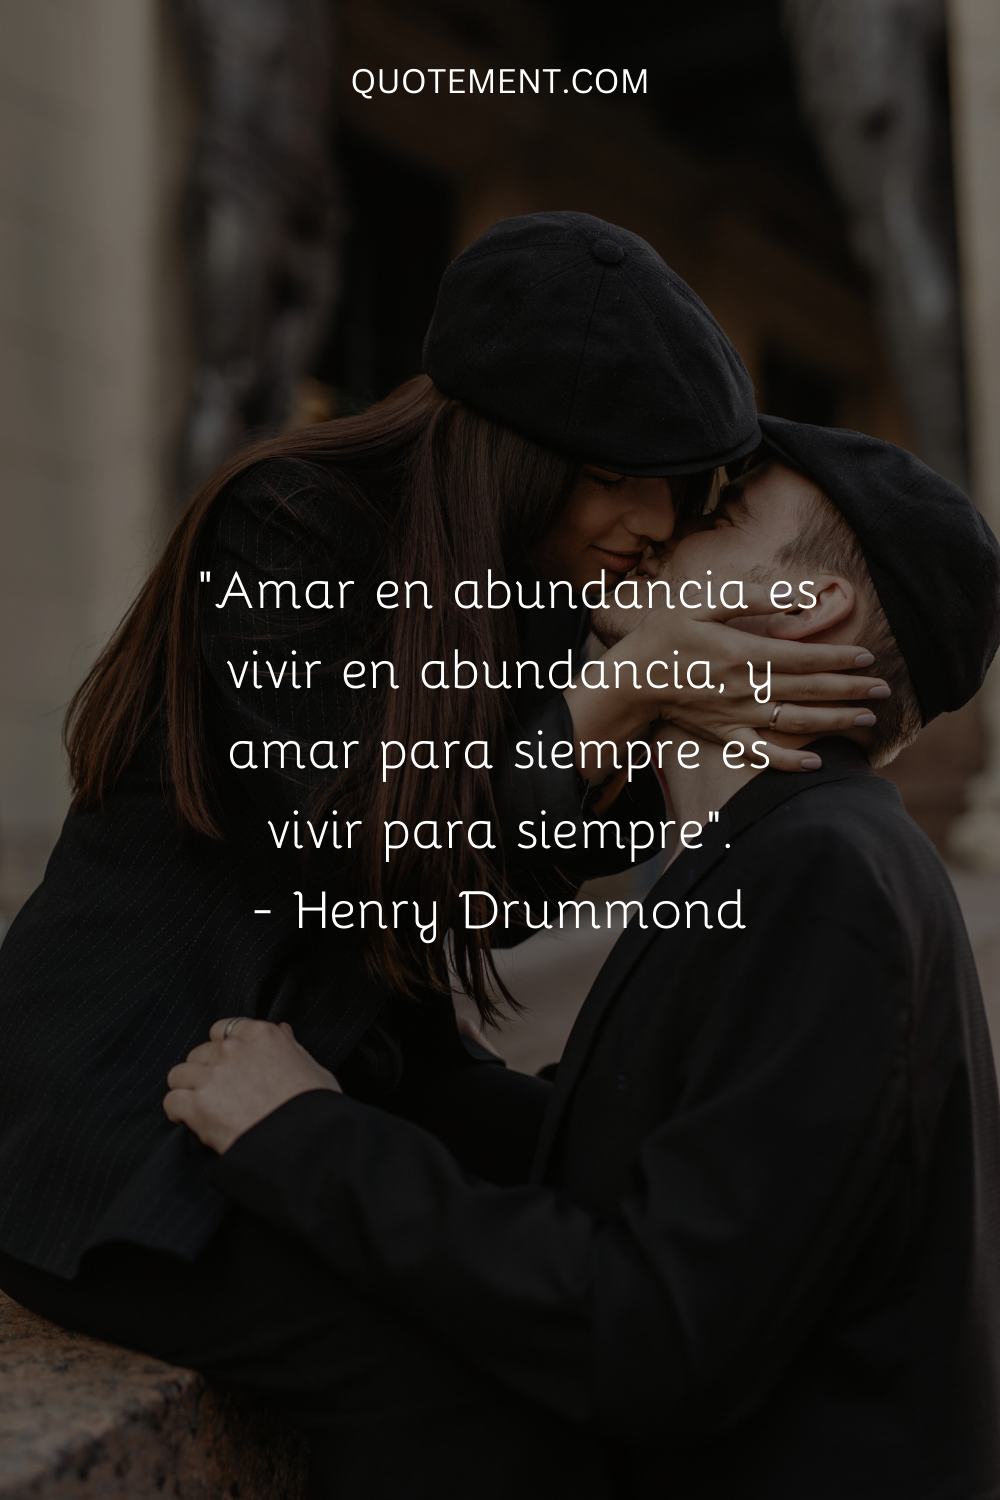 "Amar en abundancia es vivir en abundancia, y amar para siempre es vivir para siempre". - Henry Drummond